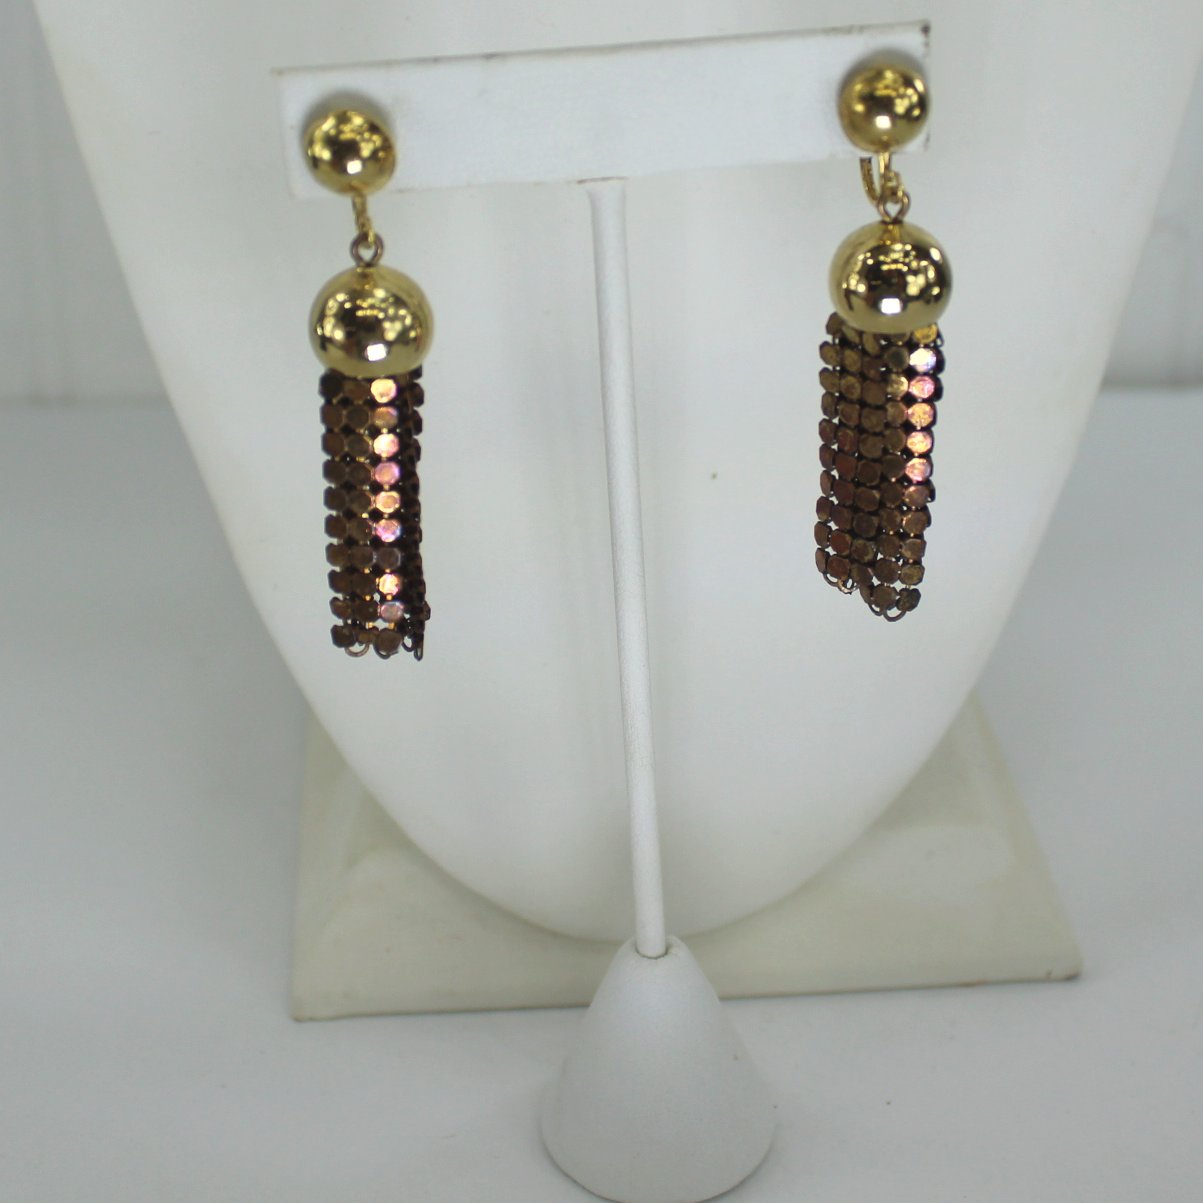 Wrap Necklace or Belt Dangle Earrings Chain Metal Design Wear or DIY Project closeup earrings